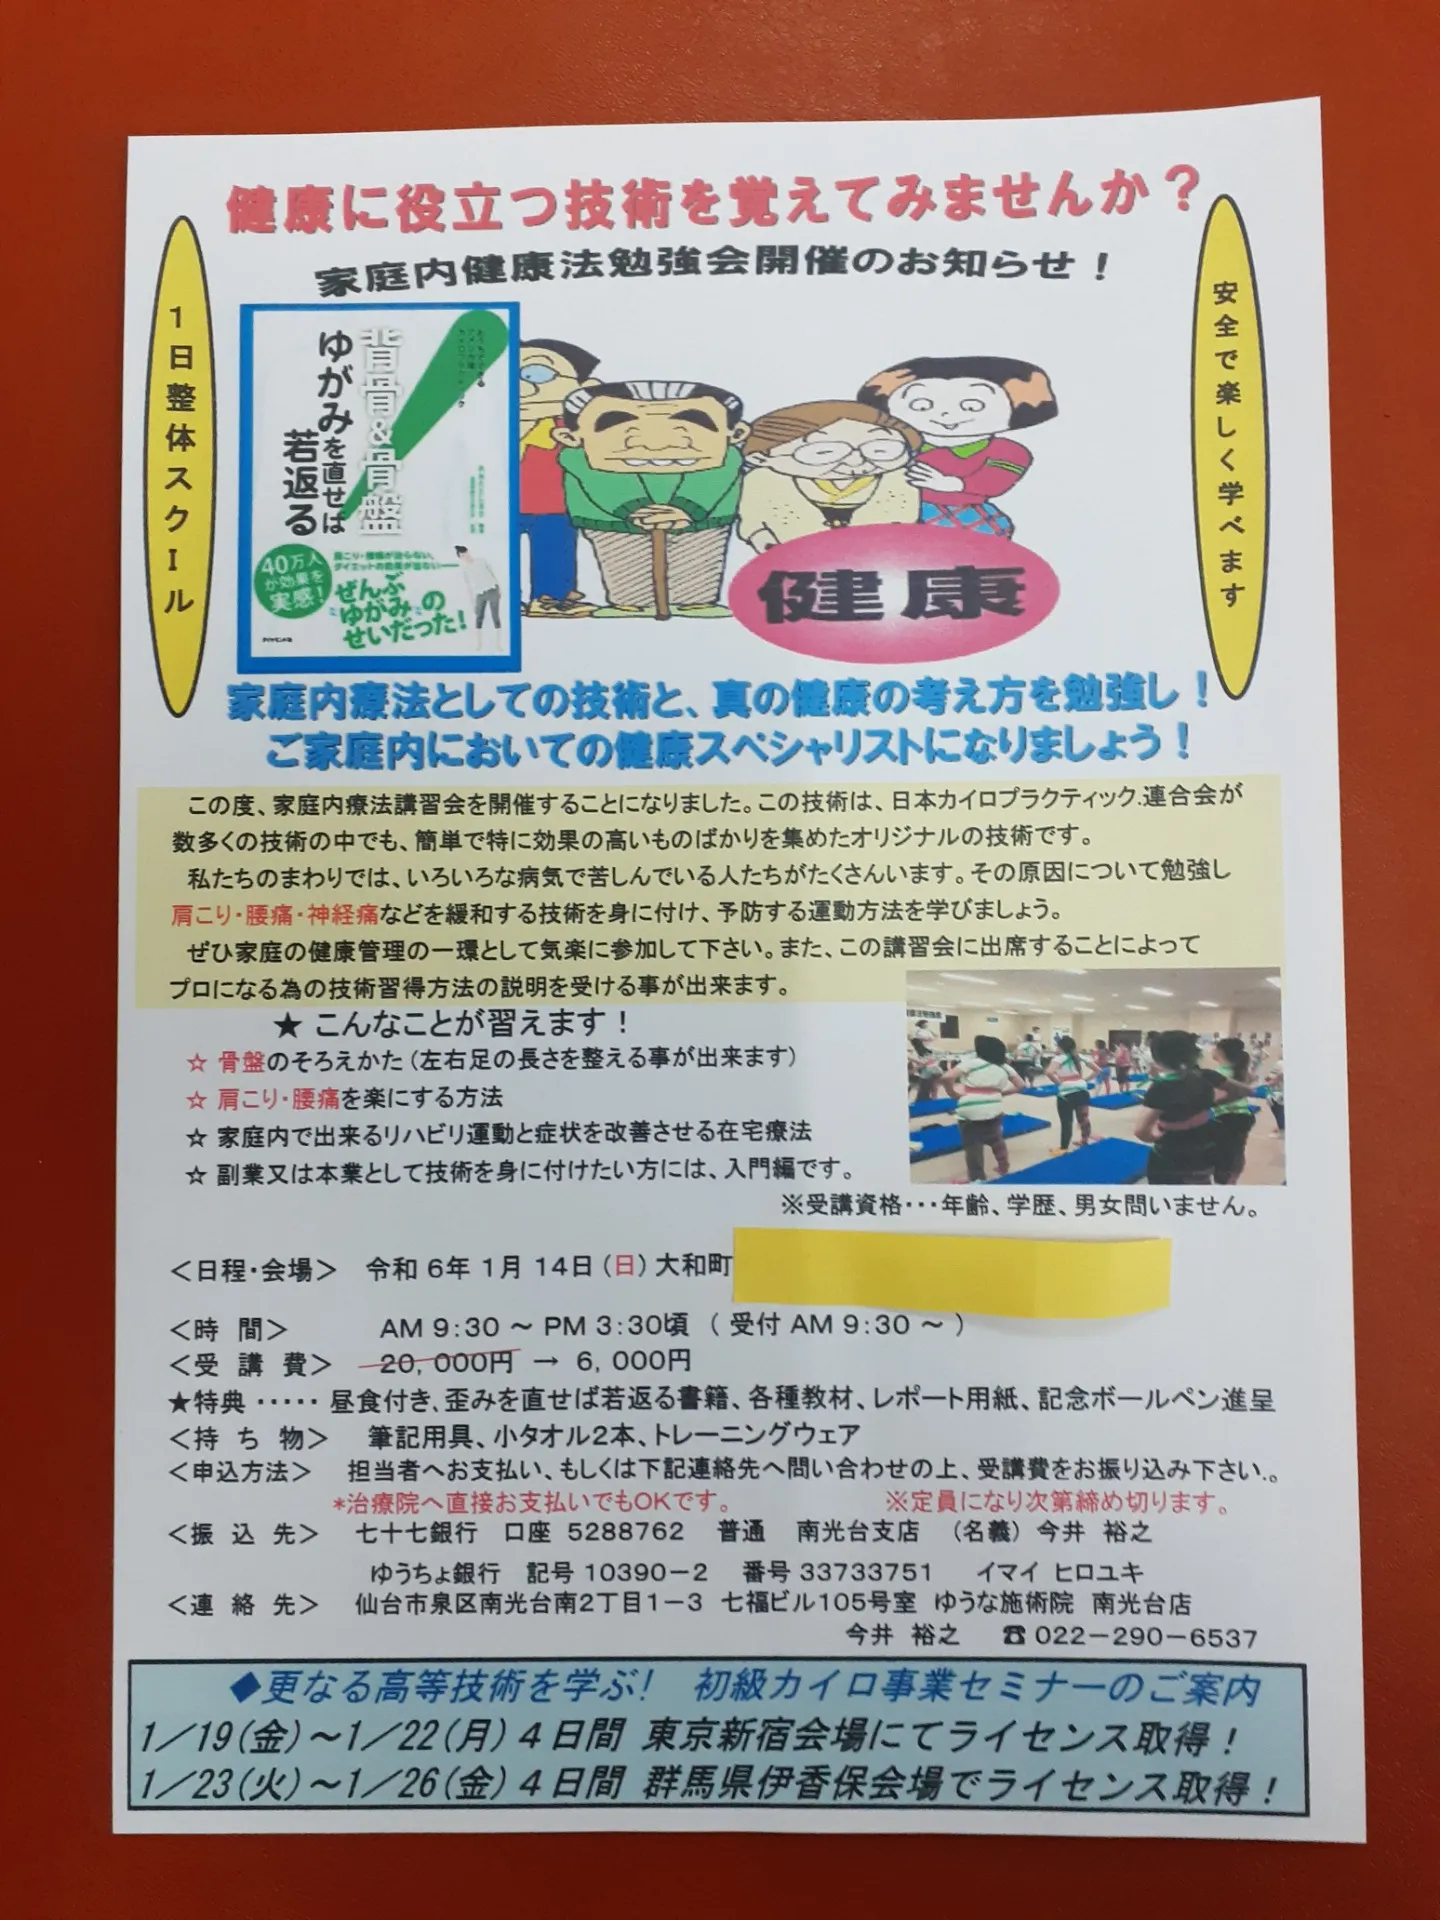 【仙台市・整体】●1/8(月)・10(水) カイロプラクティック 無料体験・説明会を開催します。